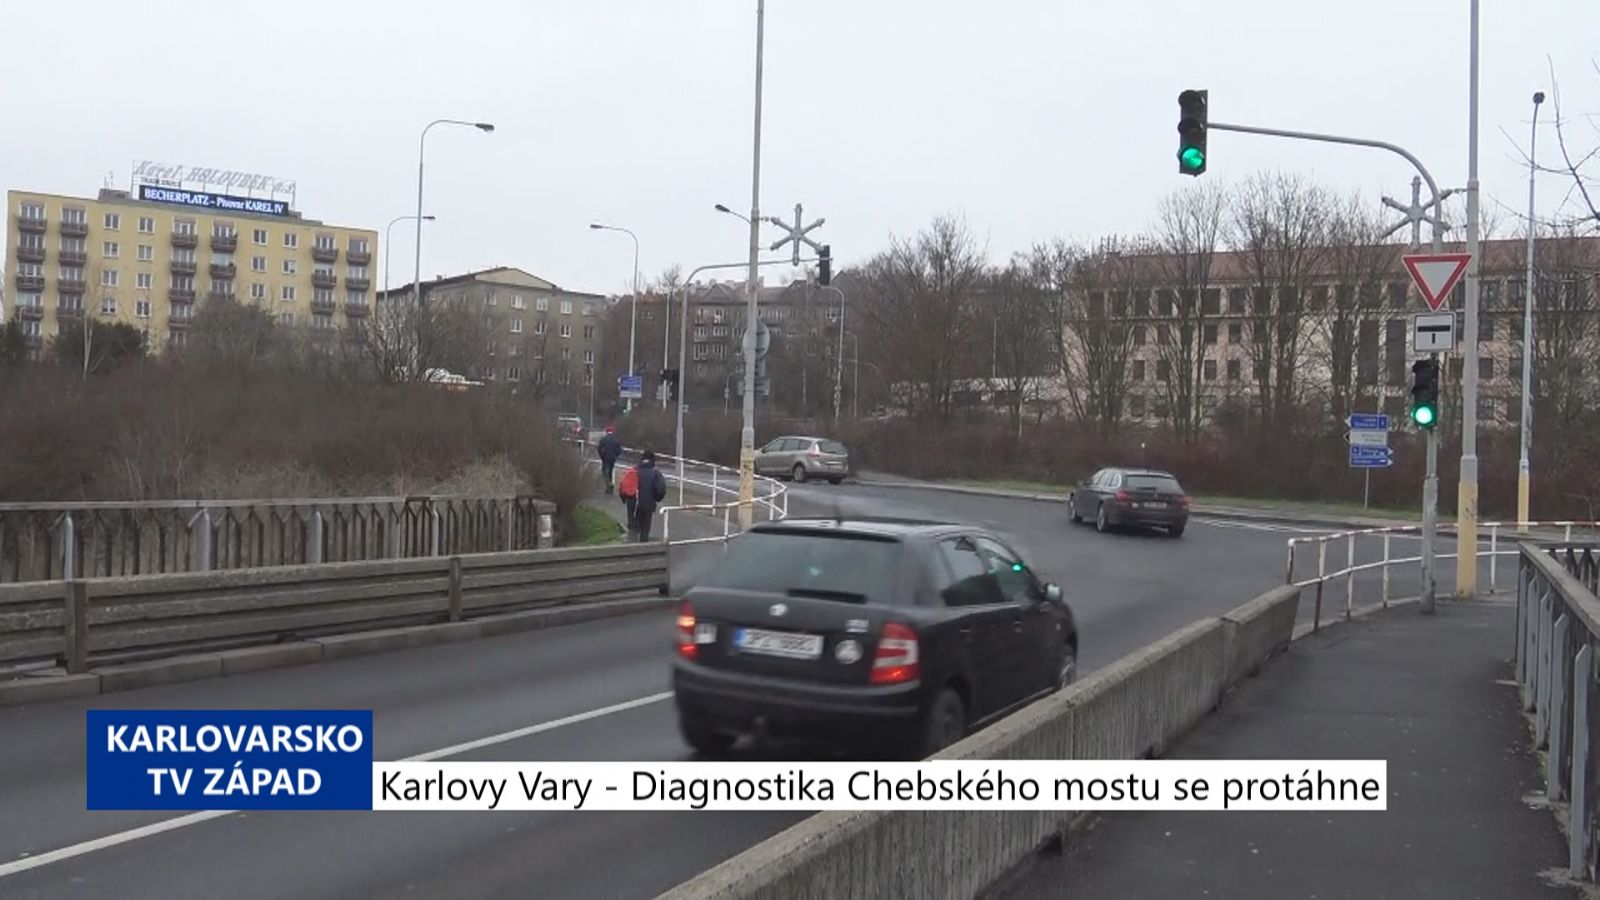 Karlovy Vary: Diagnostika Chebského mostu se protáhne (TV Západ)